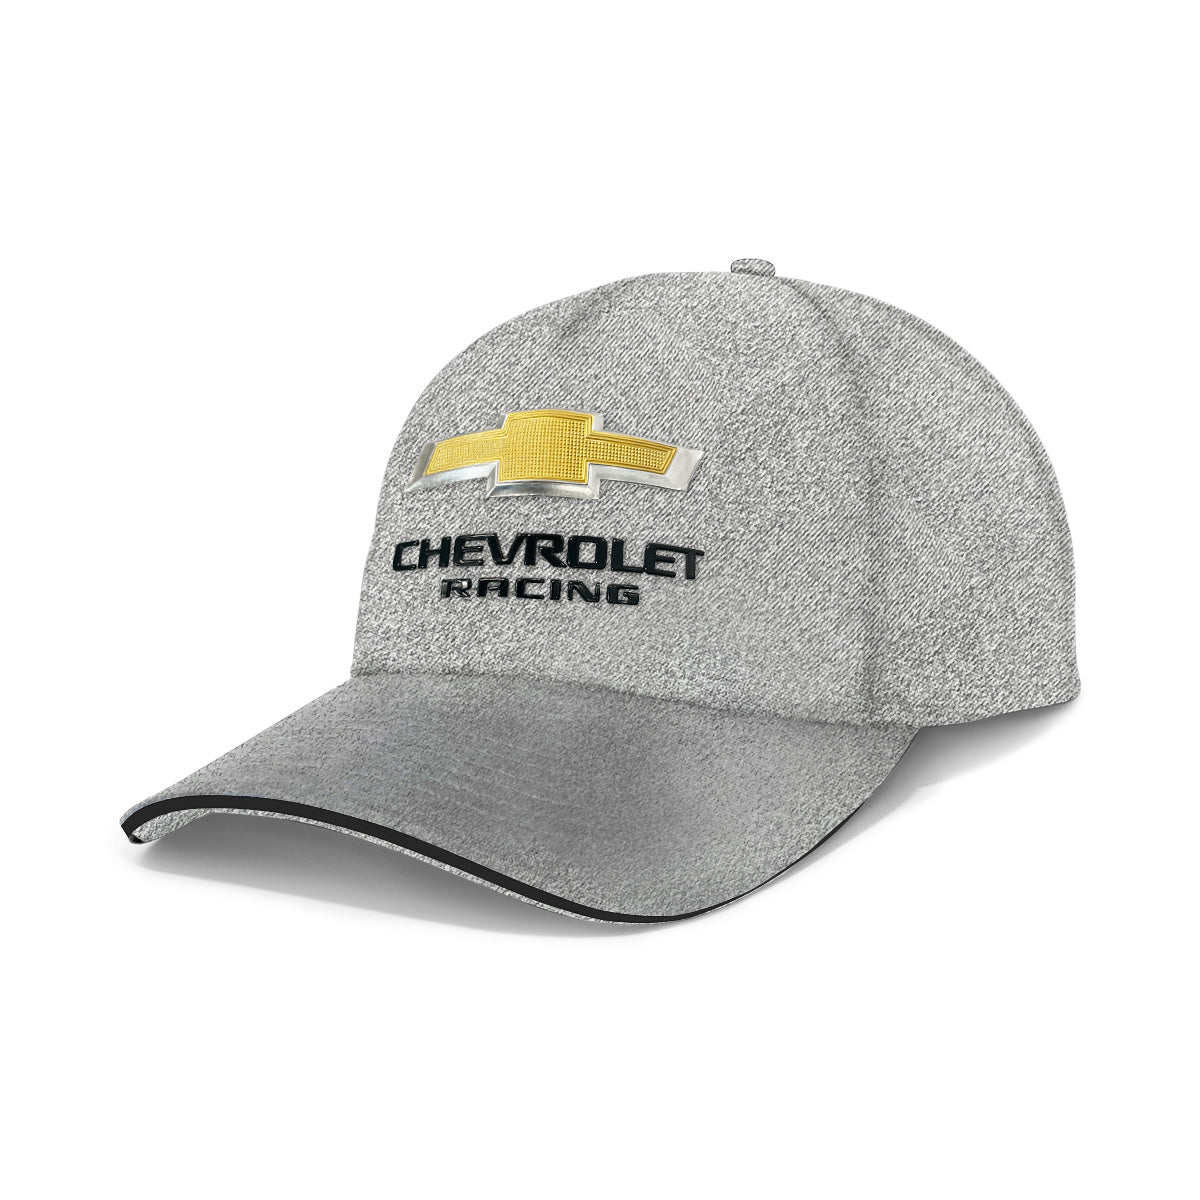 Chevrolet Racing Cap